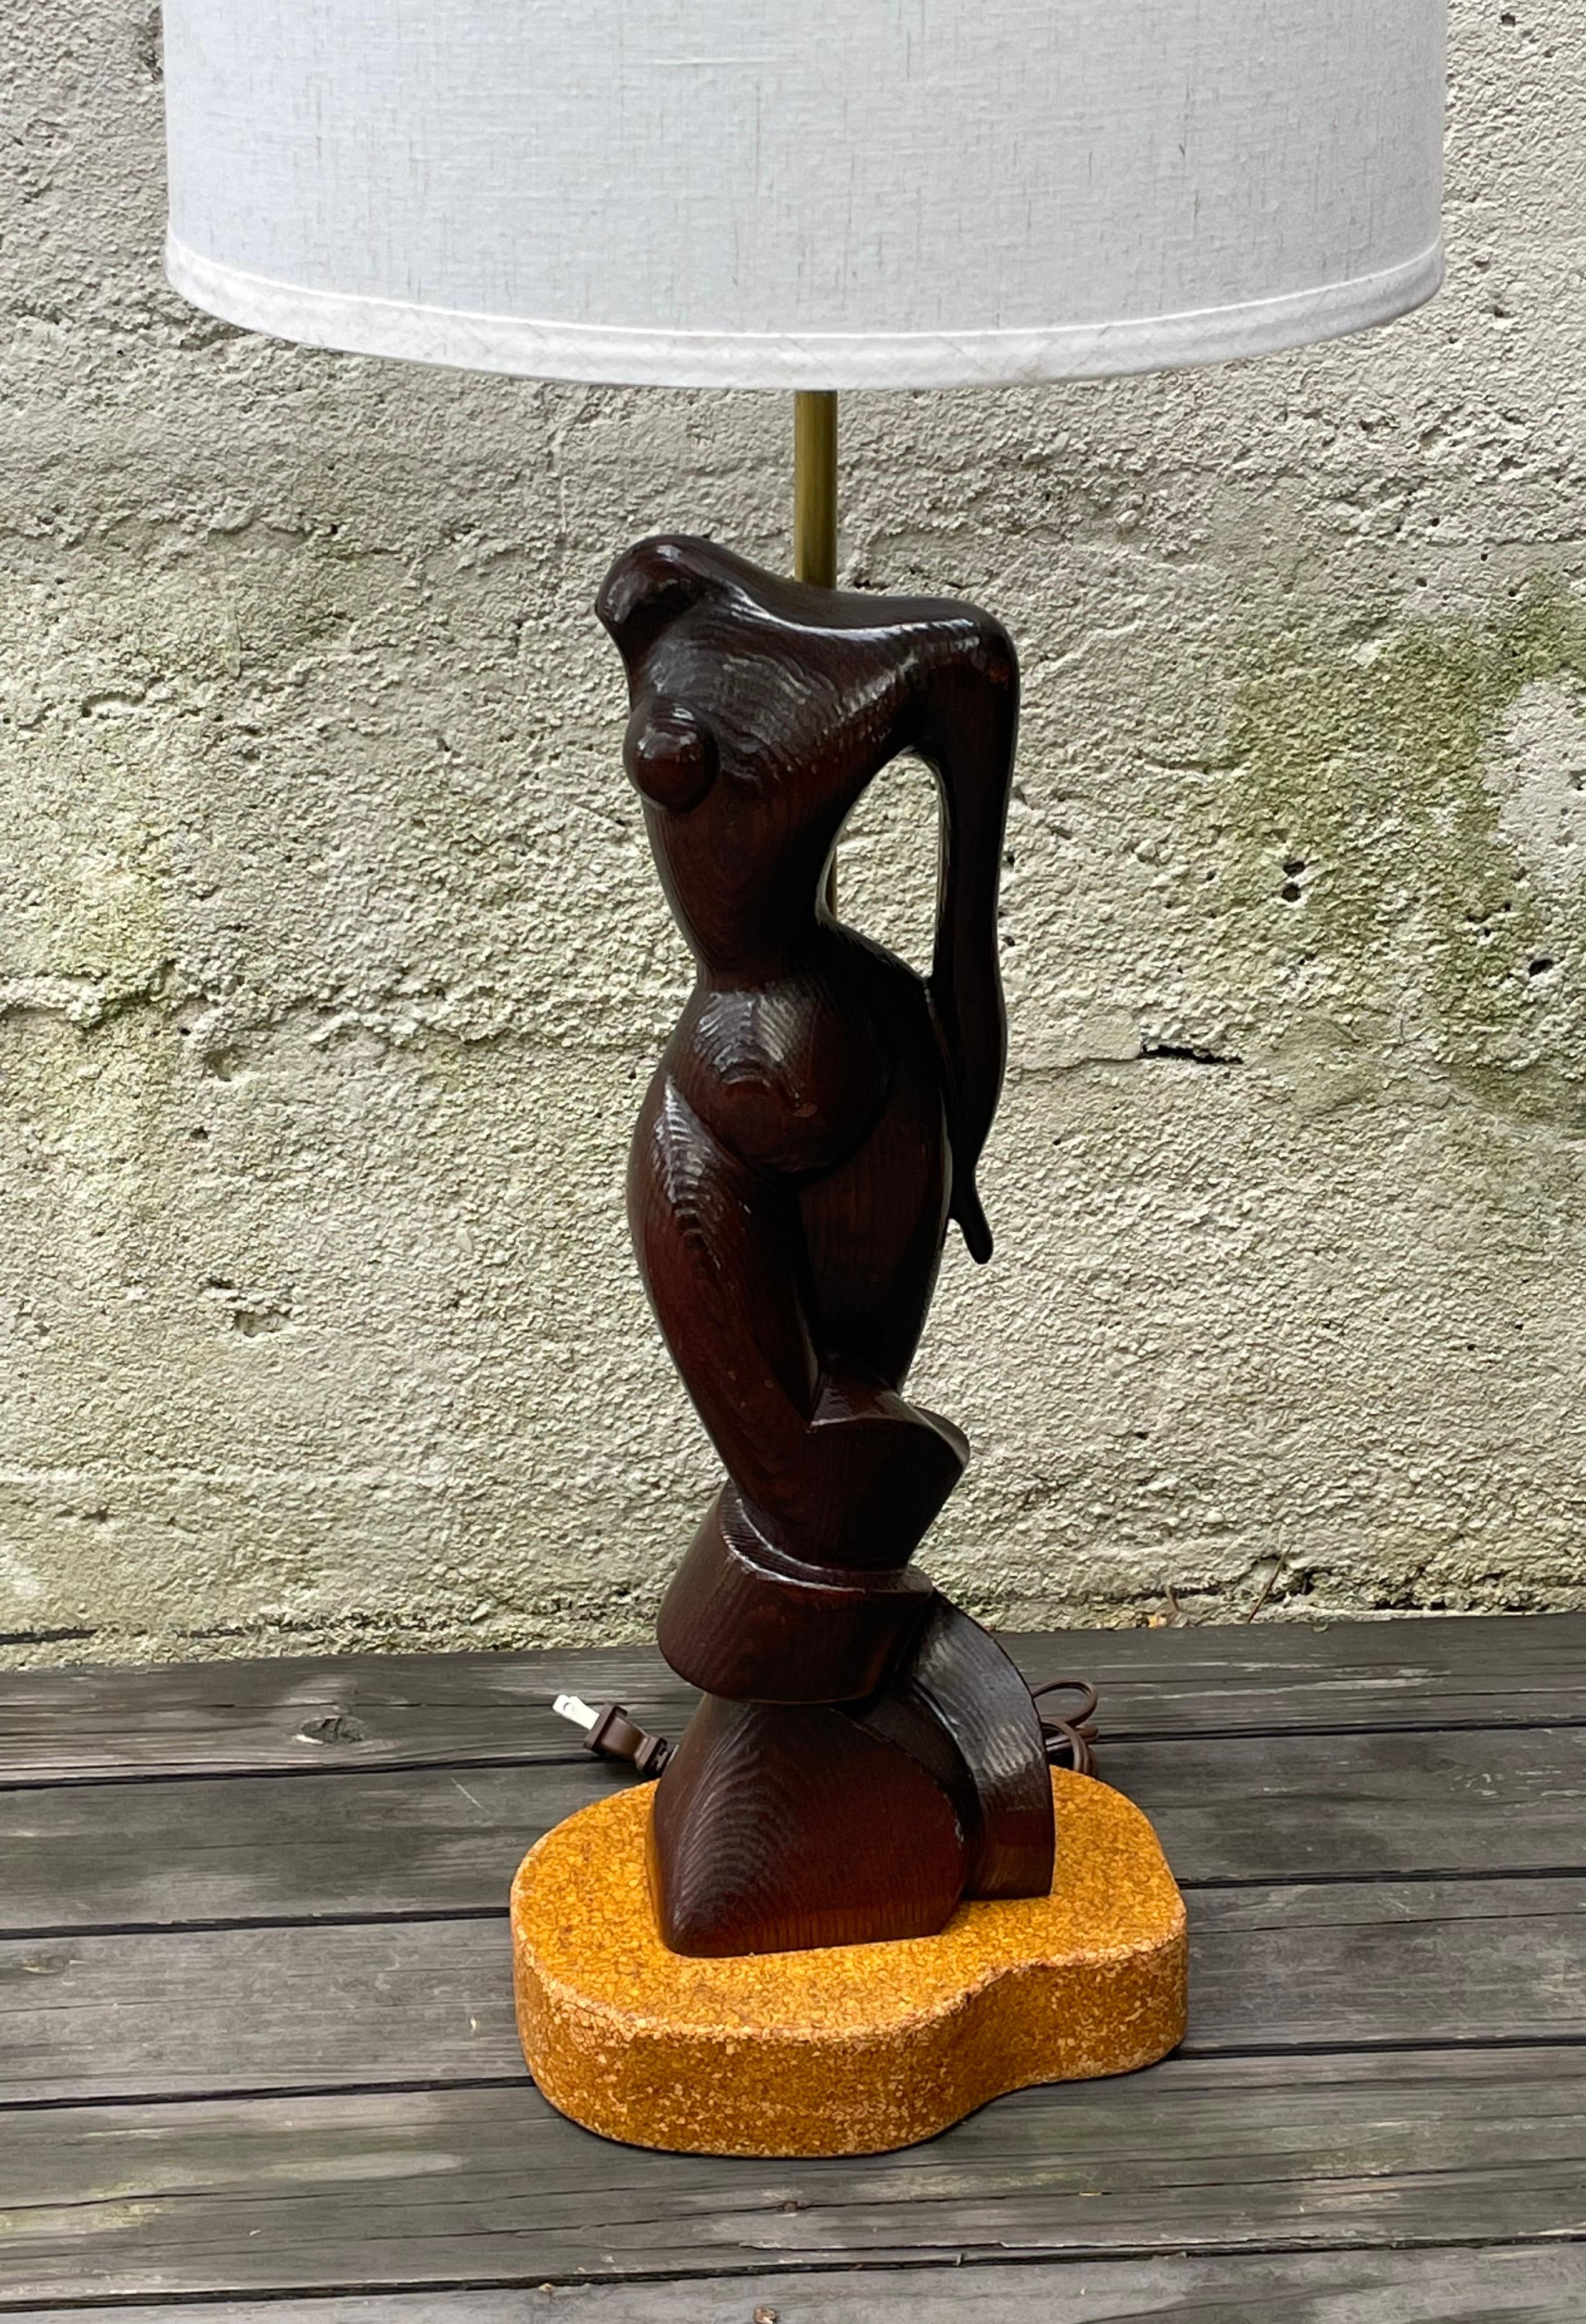 Fantastique lampe de table en bois sculpté, sculpture féminine par Edward Stasack, montée sur une base doublée de liège. Recâblé, abat-jour non inclus. haut de la douille de 26